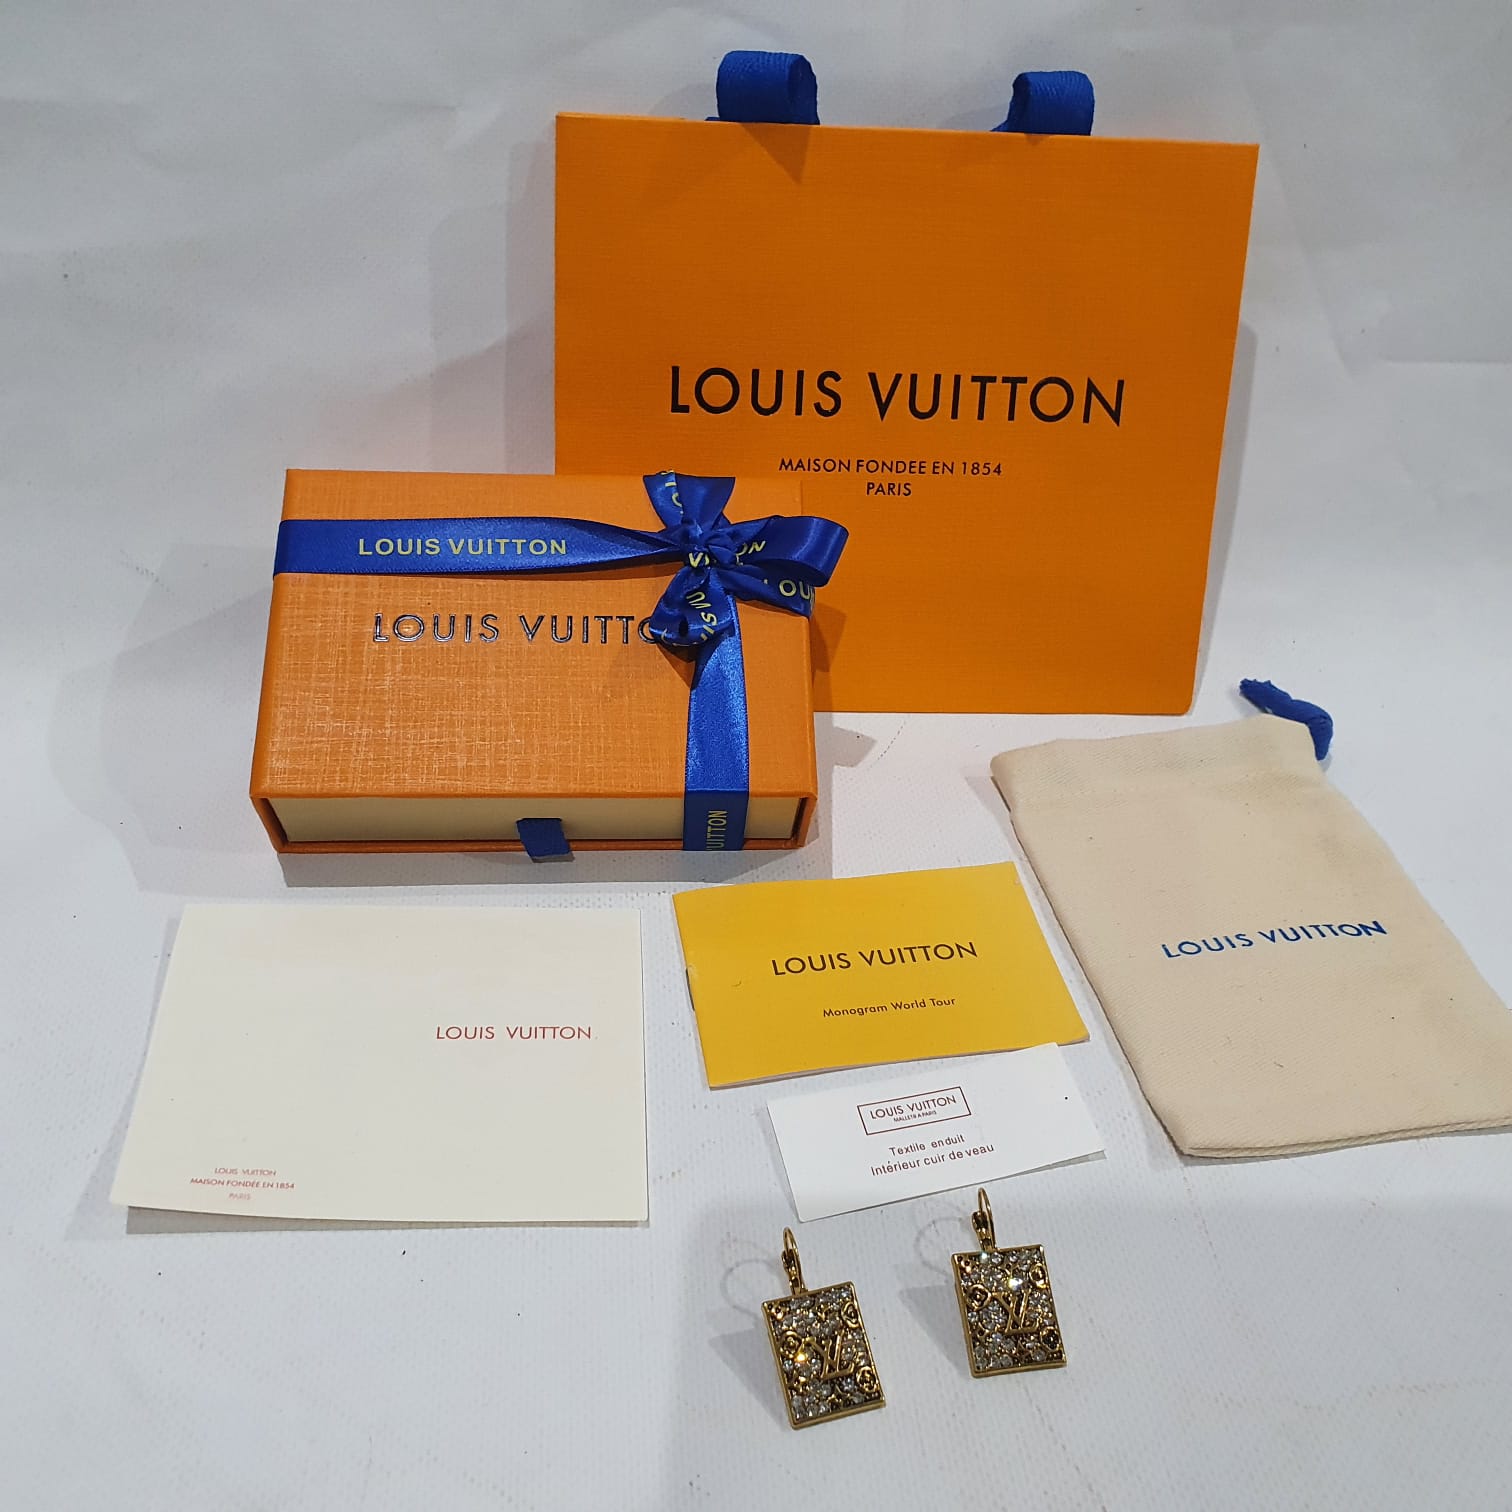 Louis Vuitton Earrings.